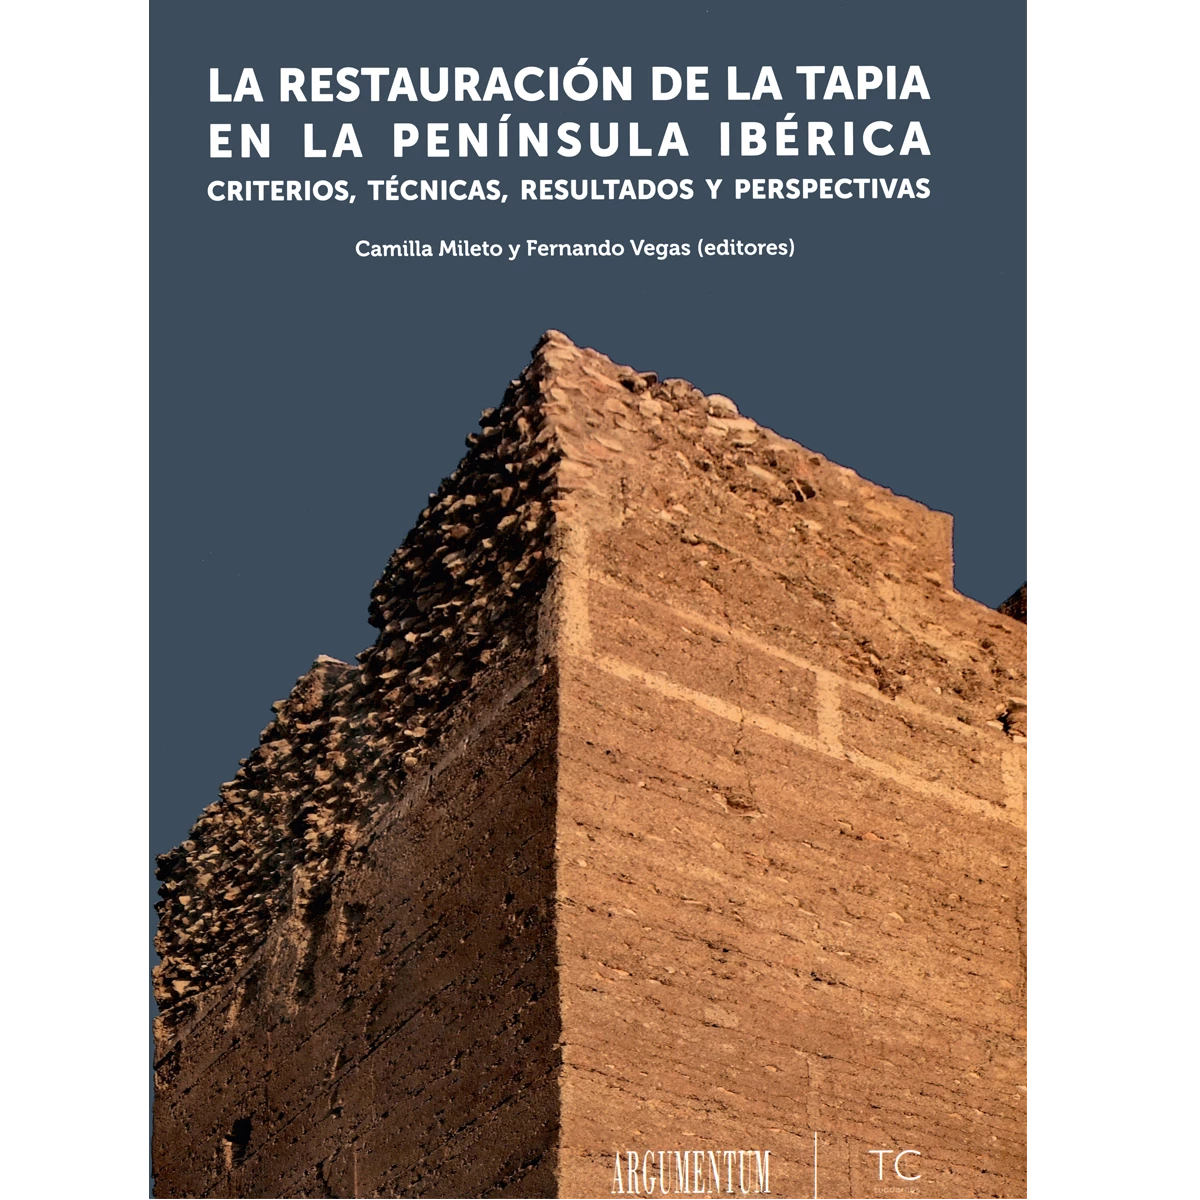 La restauración de la tapia en la península Ibérica